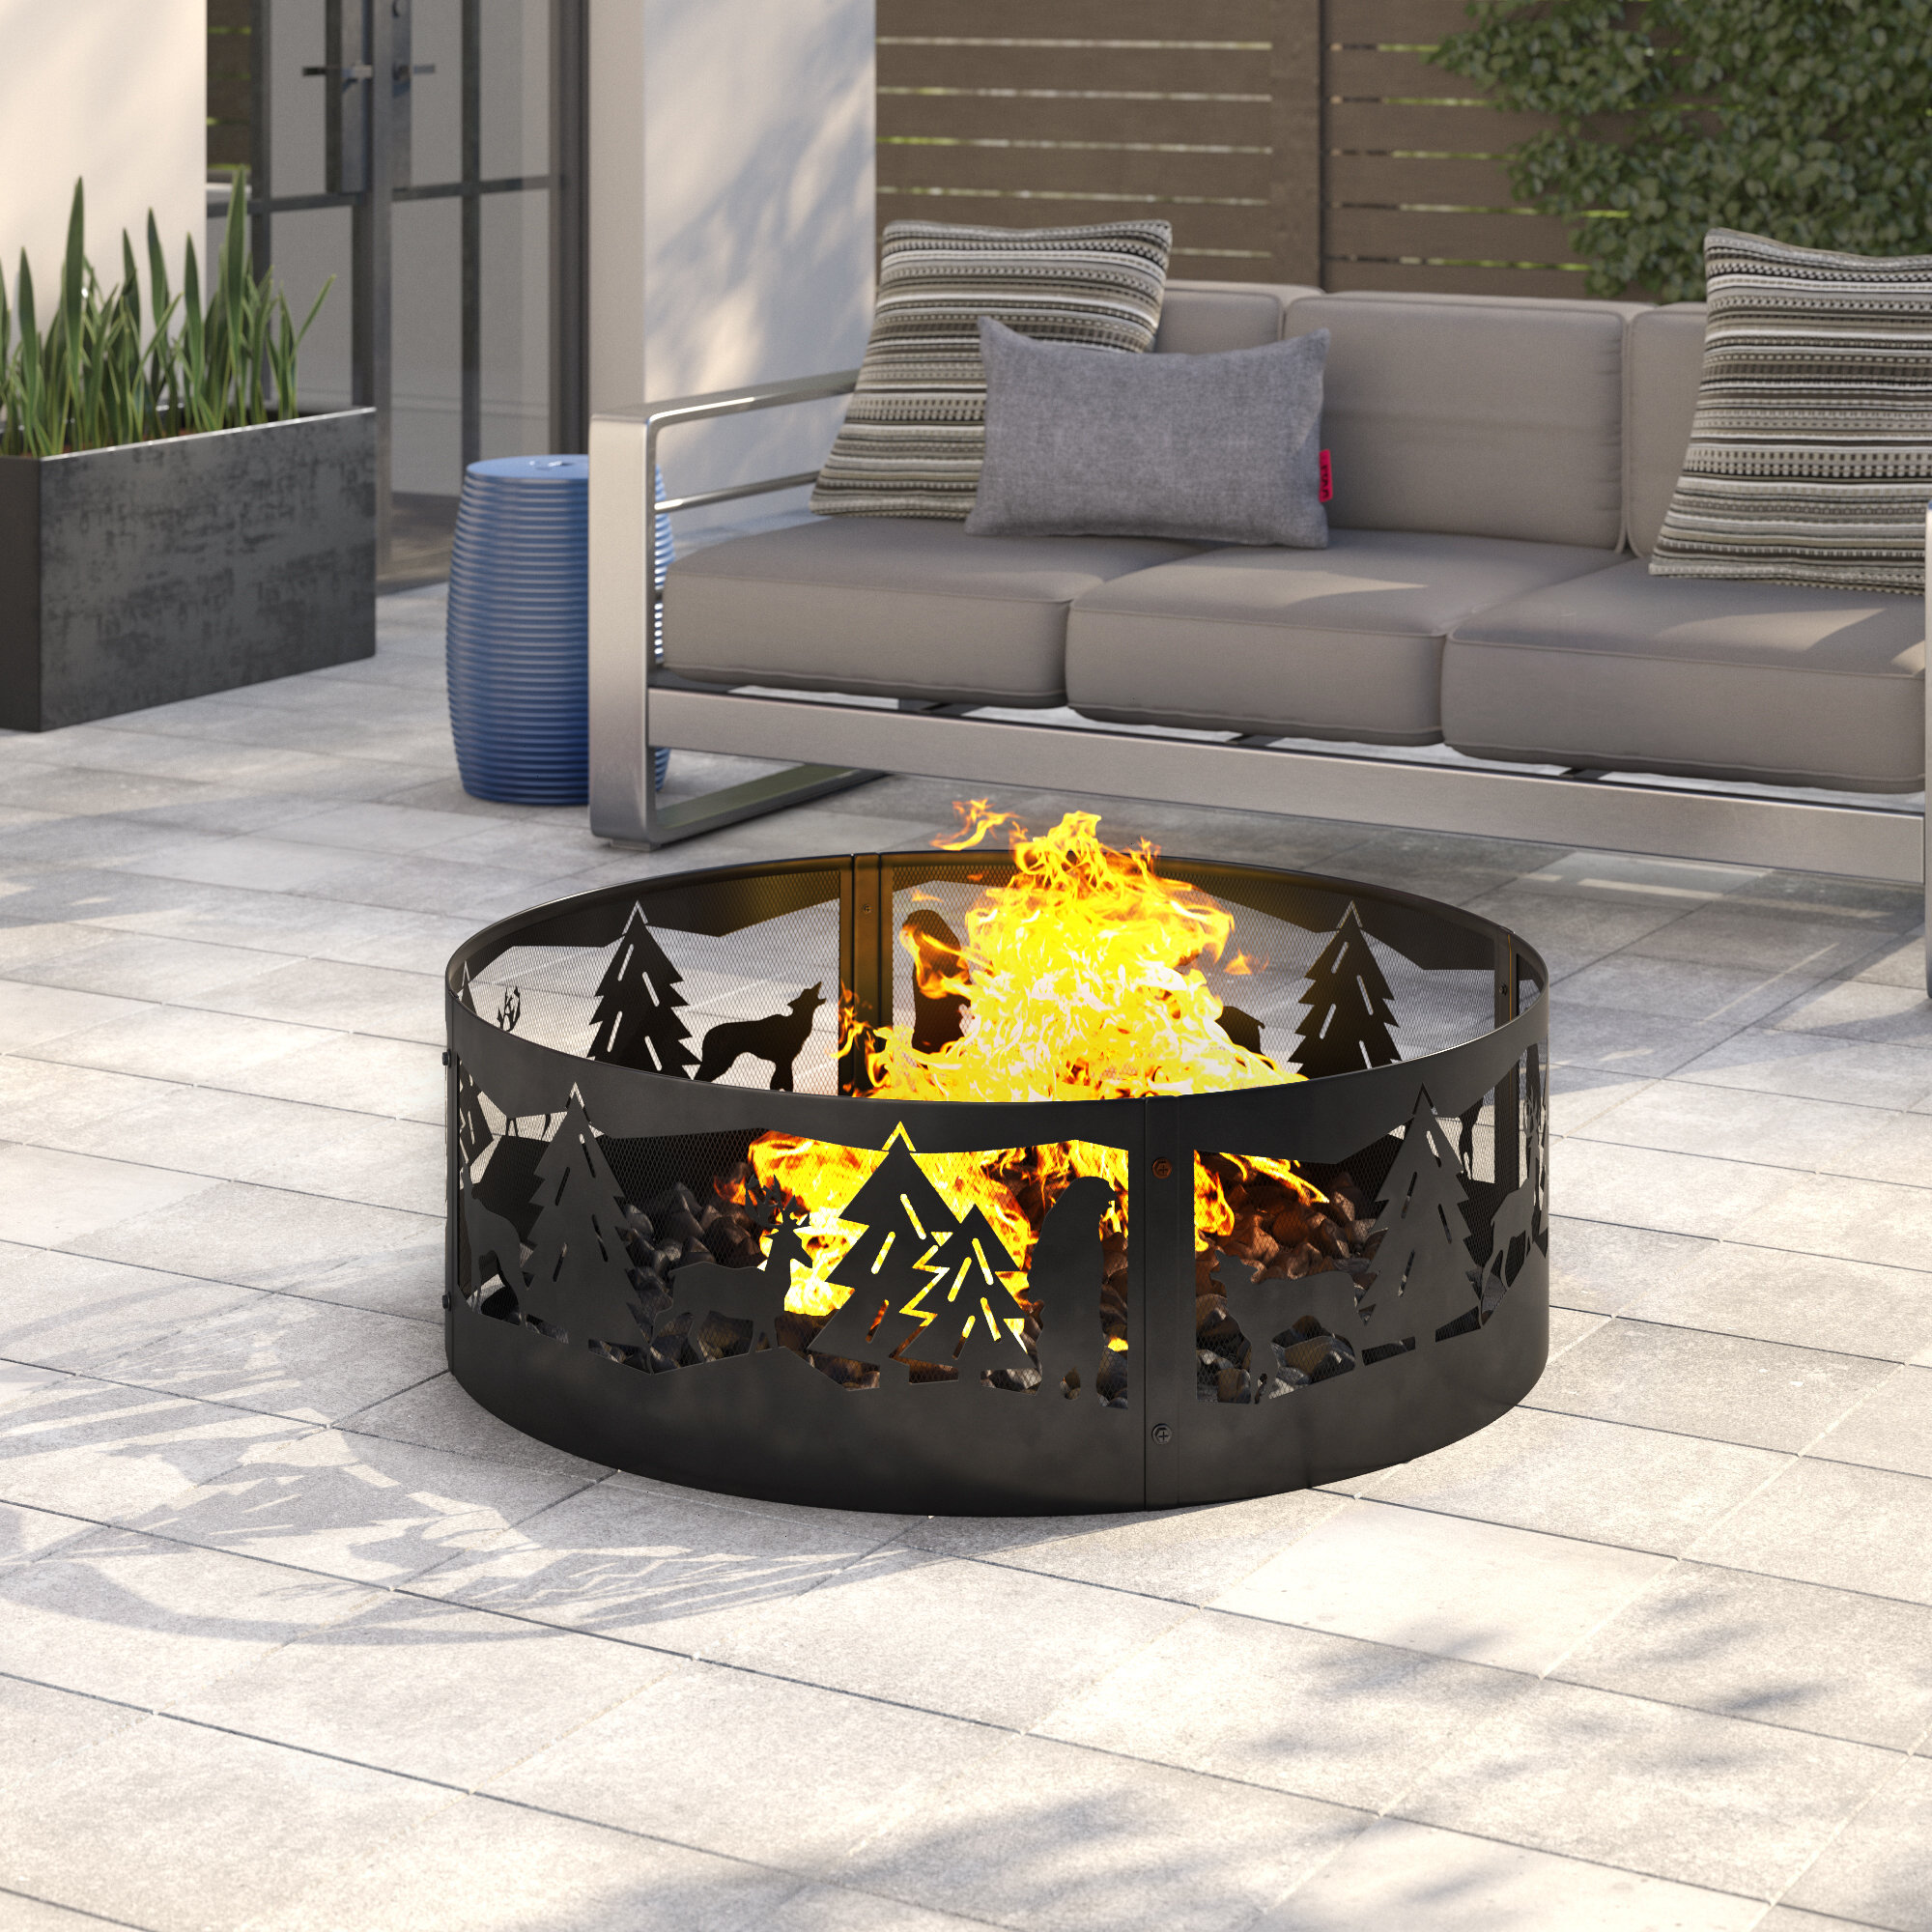 Ebern Designs Transit Steel Wood Burning Fire Ring Reviews Wayfair